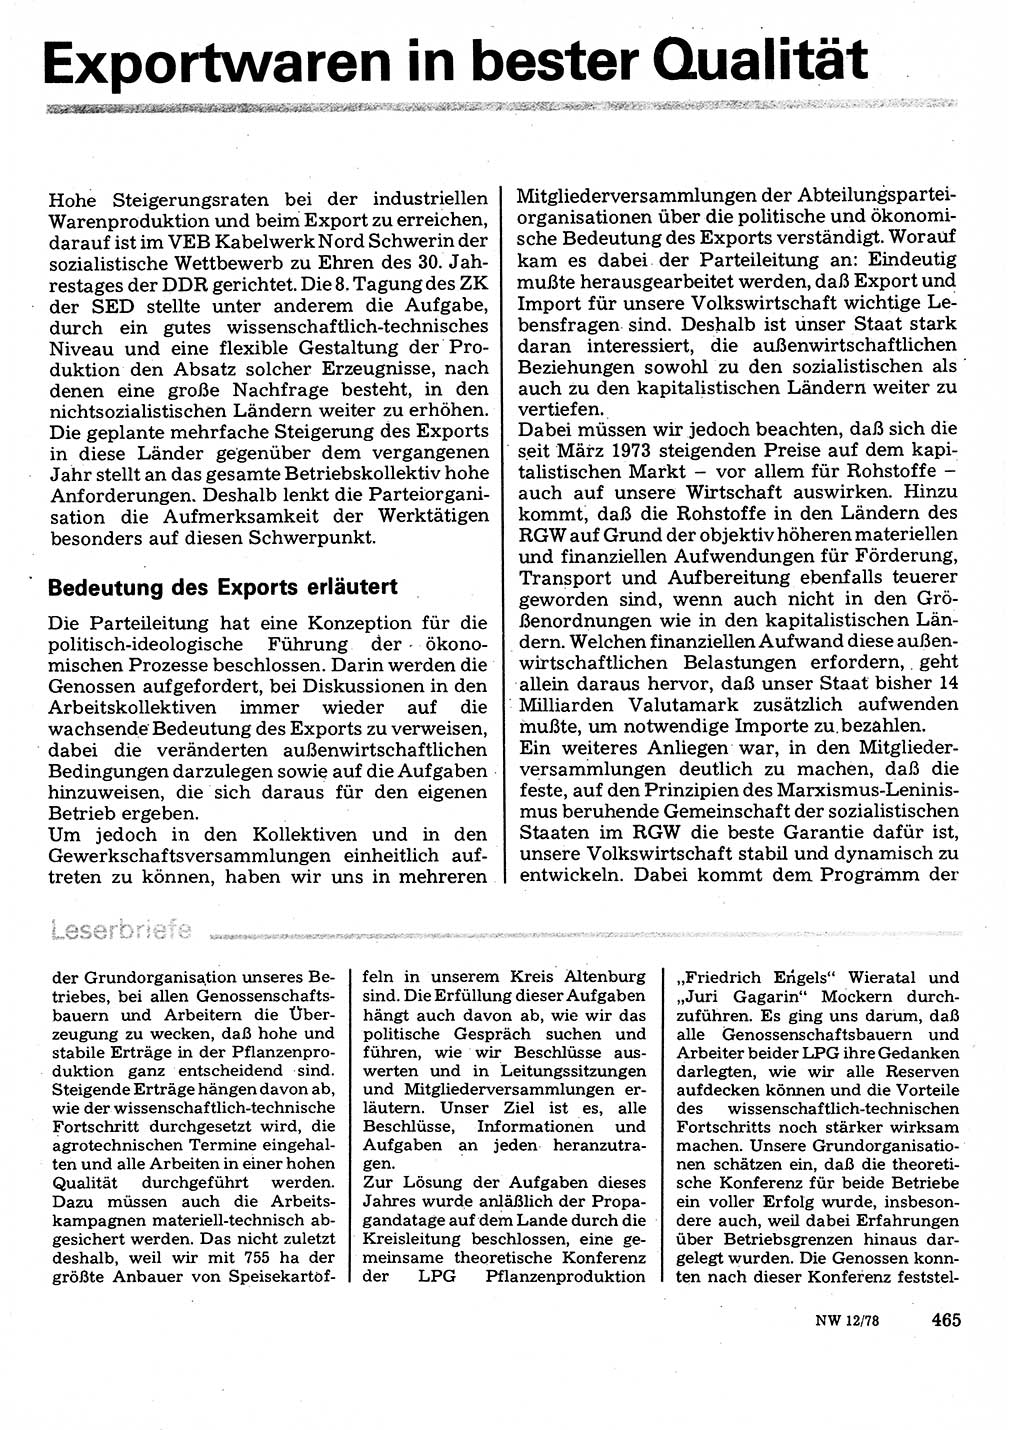 Neuer Weg (NW), Organ des Zentralkomitees (ZK) der SED (Sozialistische Einheitspartei Deutschlands) für Fragen des Parteilebens, 33. Jahrgang [Deutsche Demokratische Republik (DDR)] 1978, Seite 465 (NW ZK SED DDR 1978, S. 465)